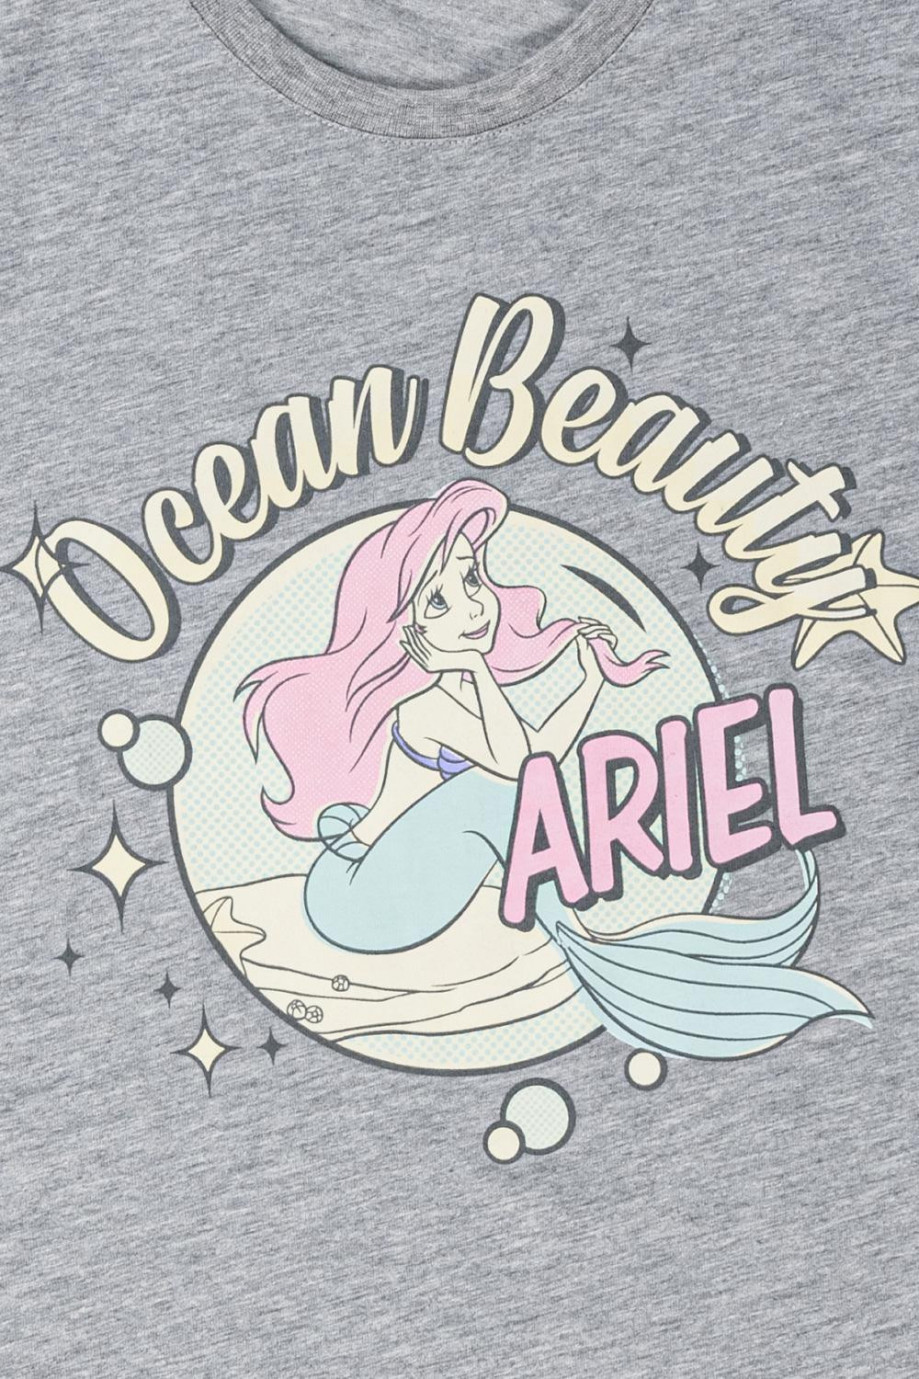 Camiseta, estampado de la princesa Ariel La Sirenita.